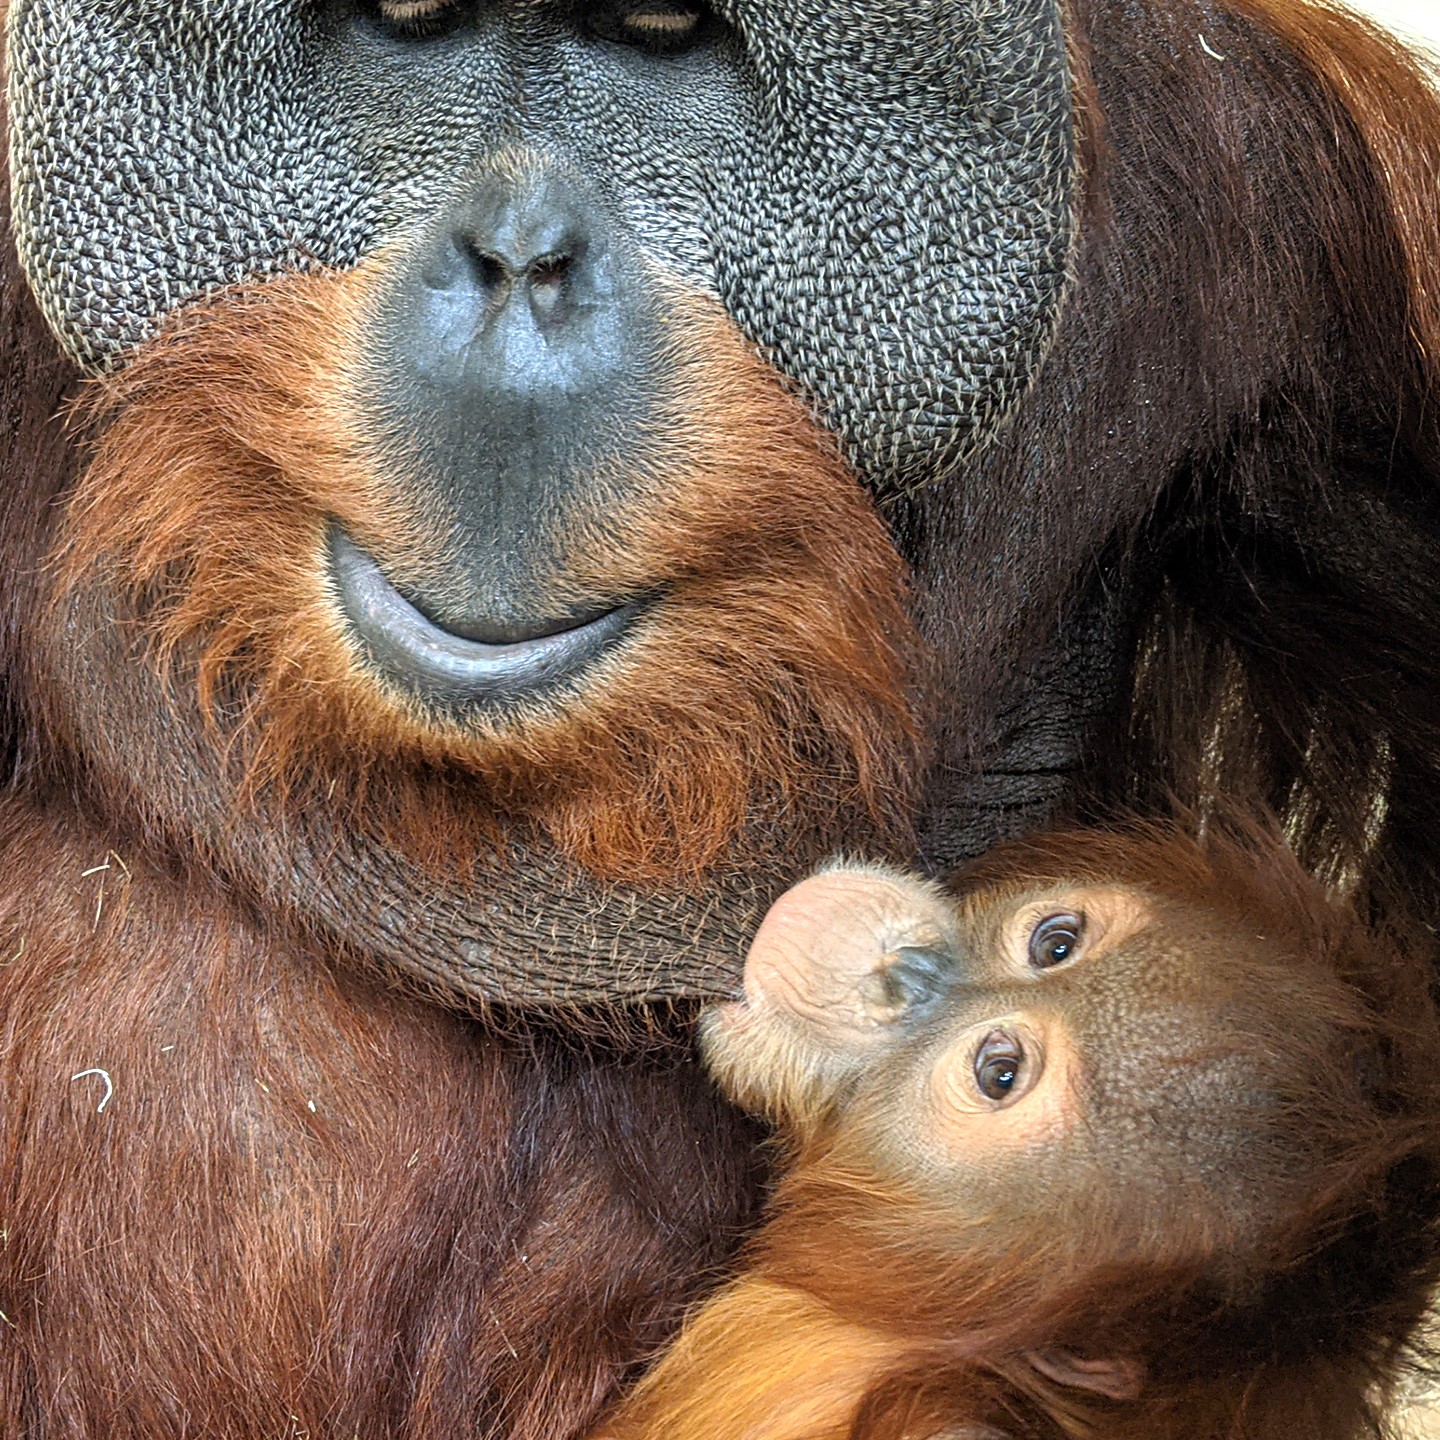 orangután de Sumatra con su cría